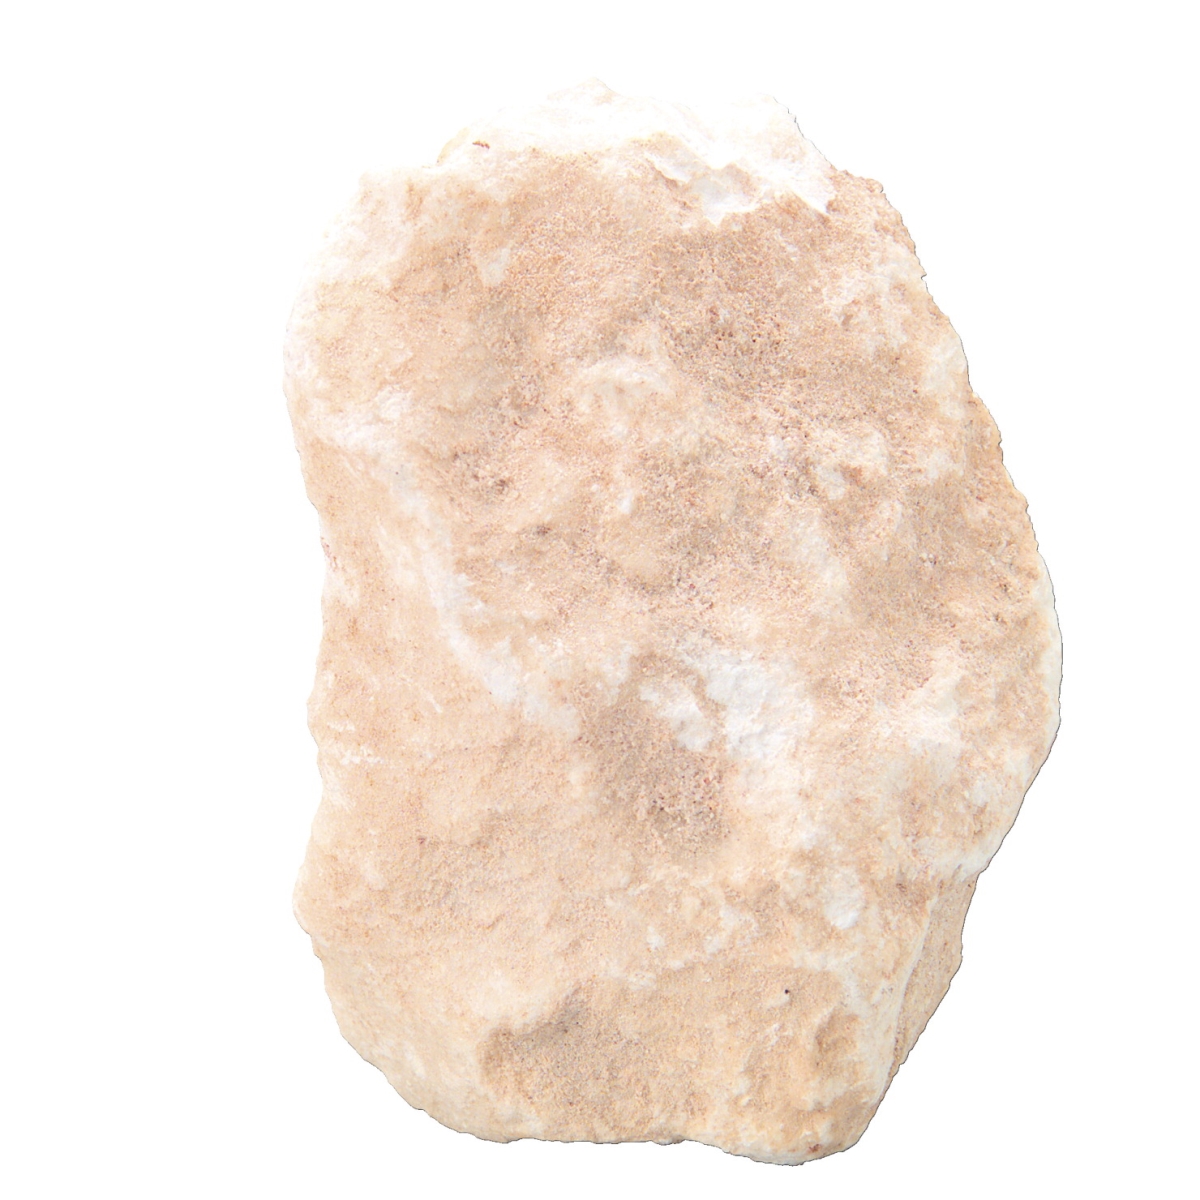 586978 Scott Resources Hand Sample Massive White Alabaster Gypsum